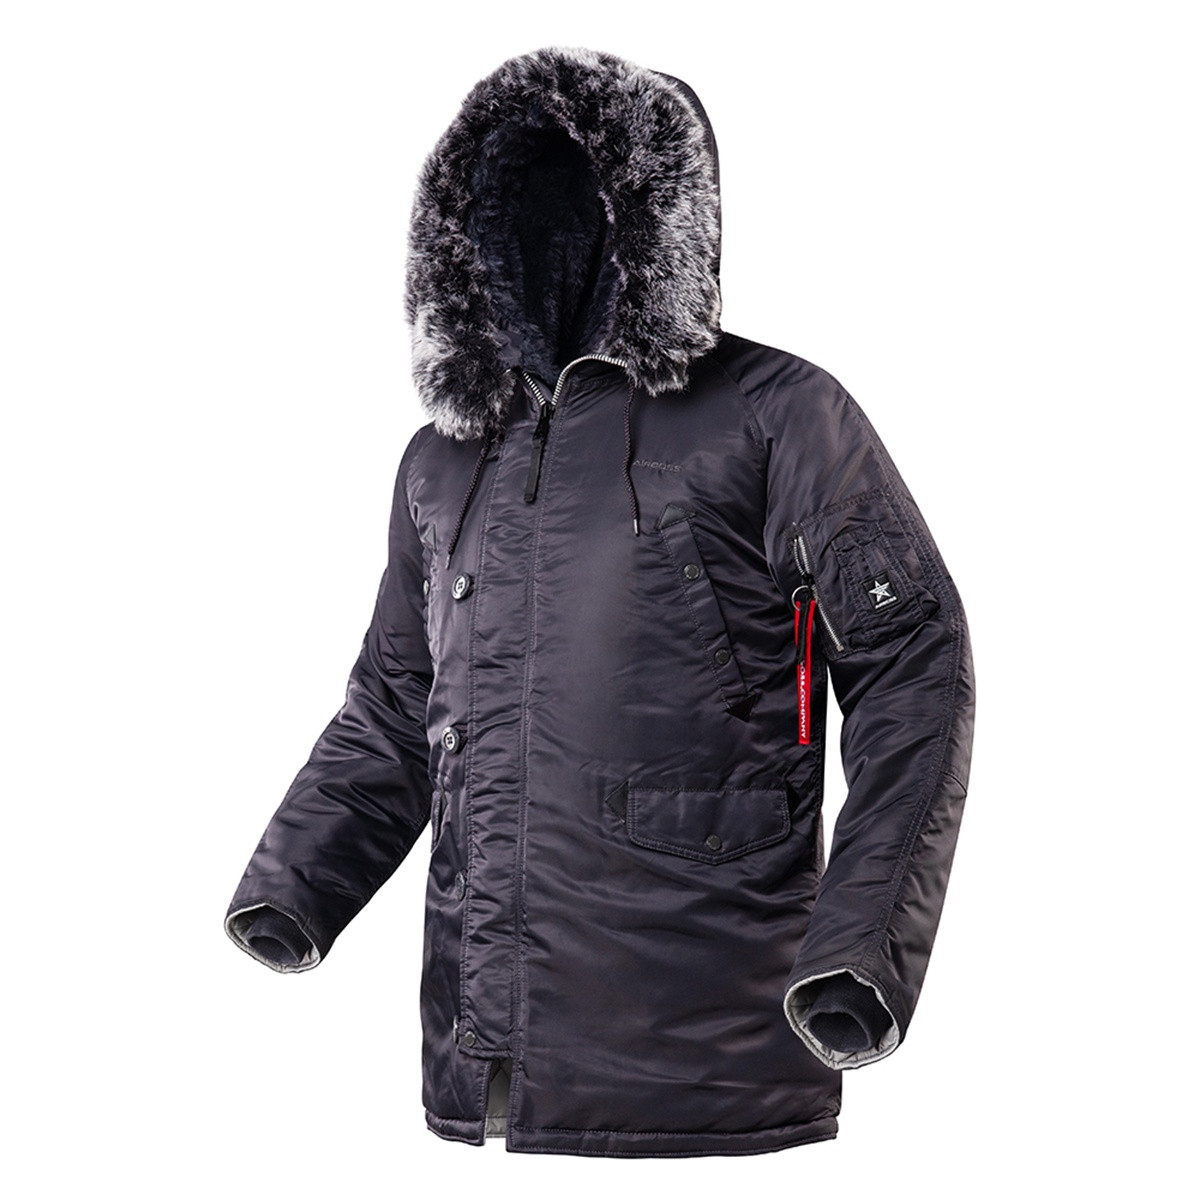 Чоловіча зимова куртка аляска Airboss Winter Parka 171000123221 (темно-сіра)